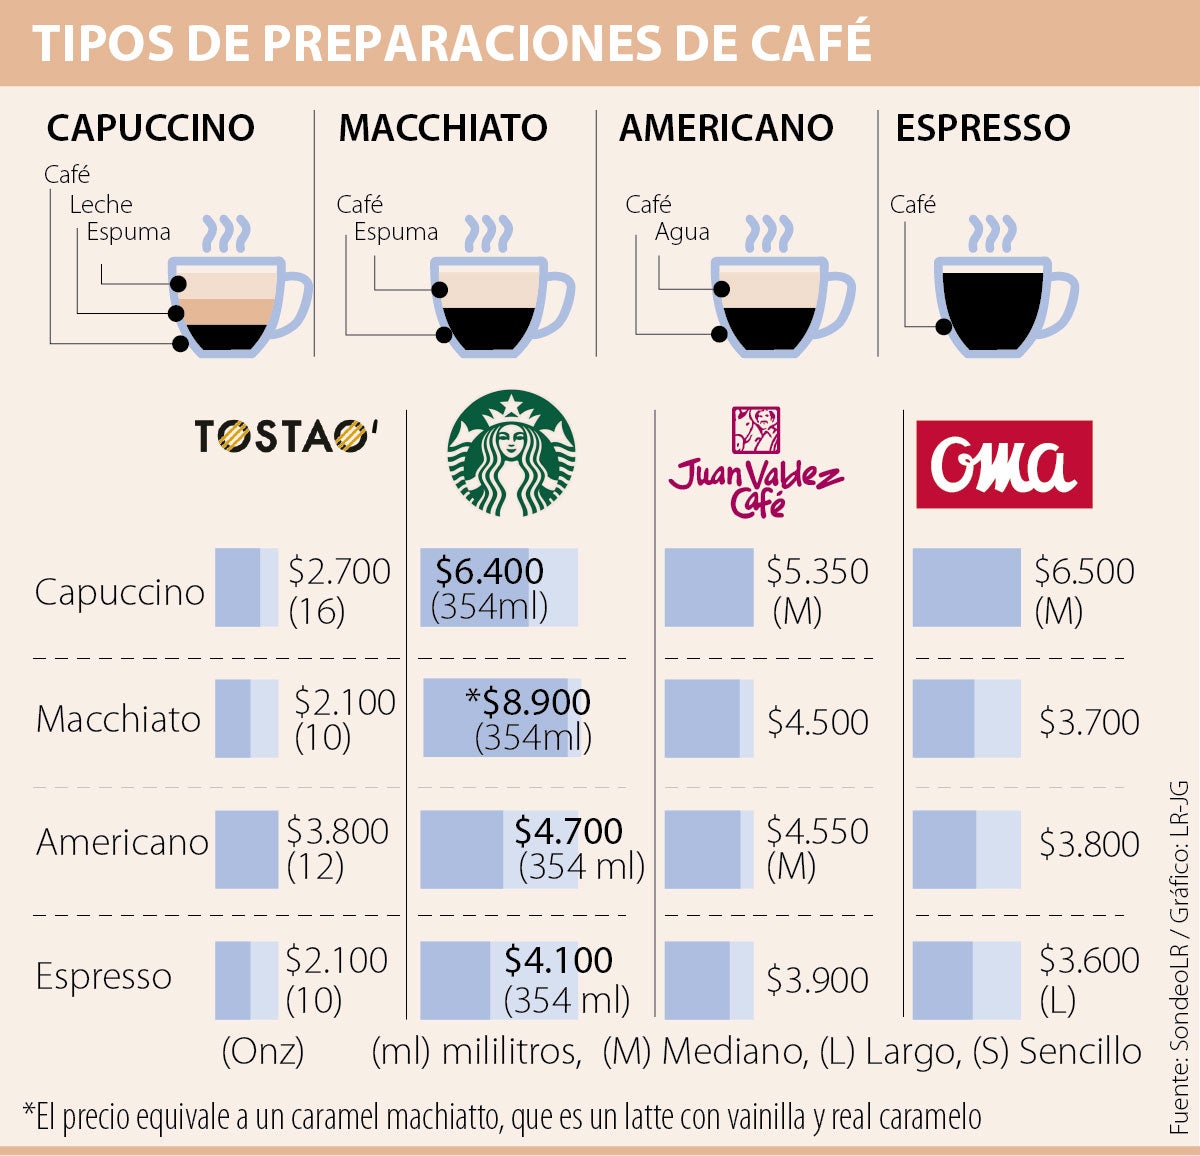 Los diferentes tipos de café según su preparación